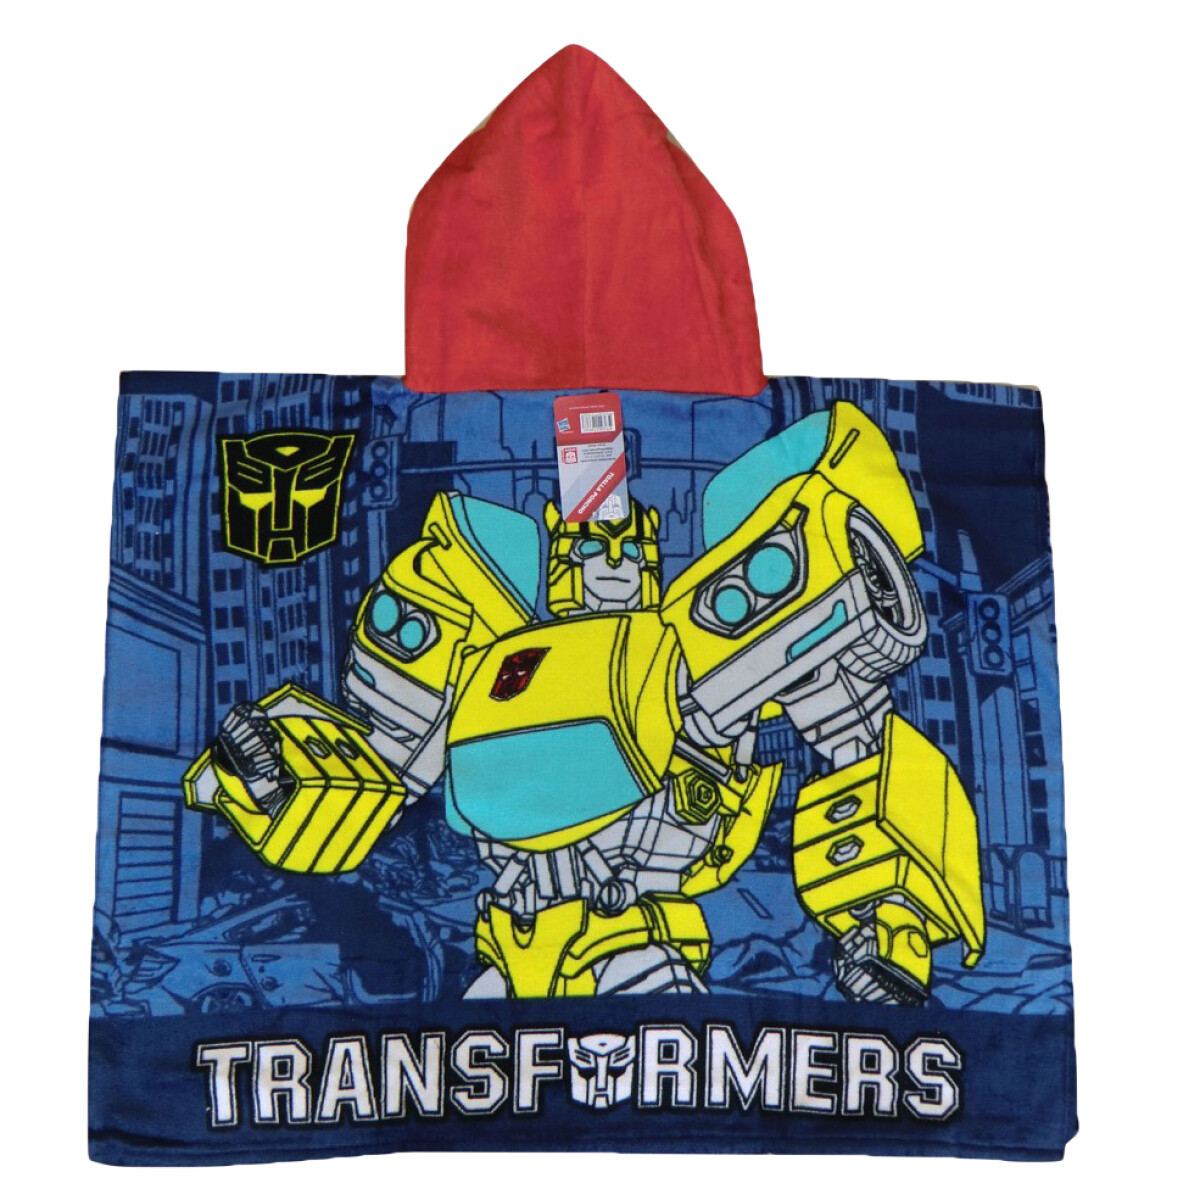 Toalla Poncho Transformers Ref. Disney - Marino/Amarillo/Rojo 